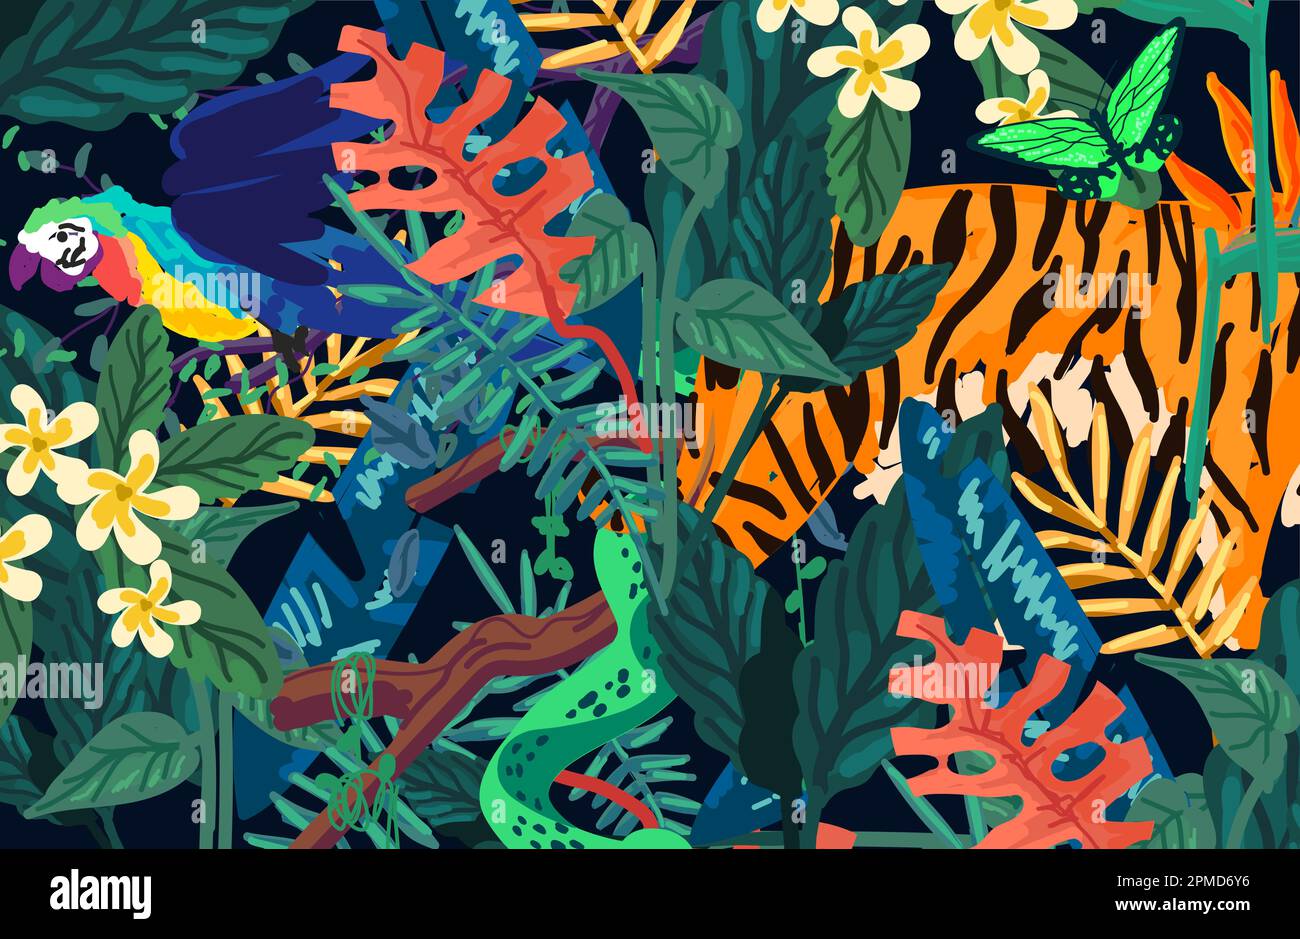 Moderne und exotische Regenwaldformen, Muster und Pinselstriche mit wilden Tieren und Pflanzen. Vektordarstellung. Stock Vektor